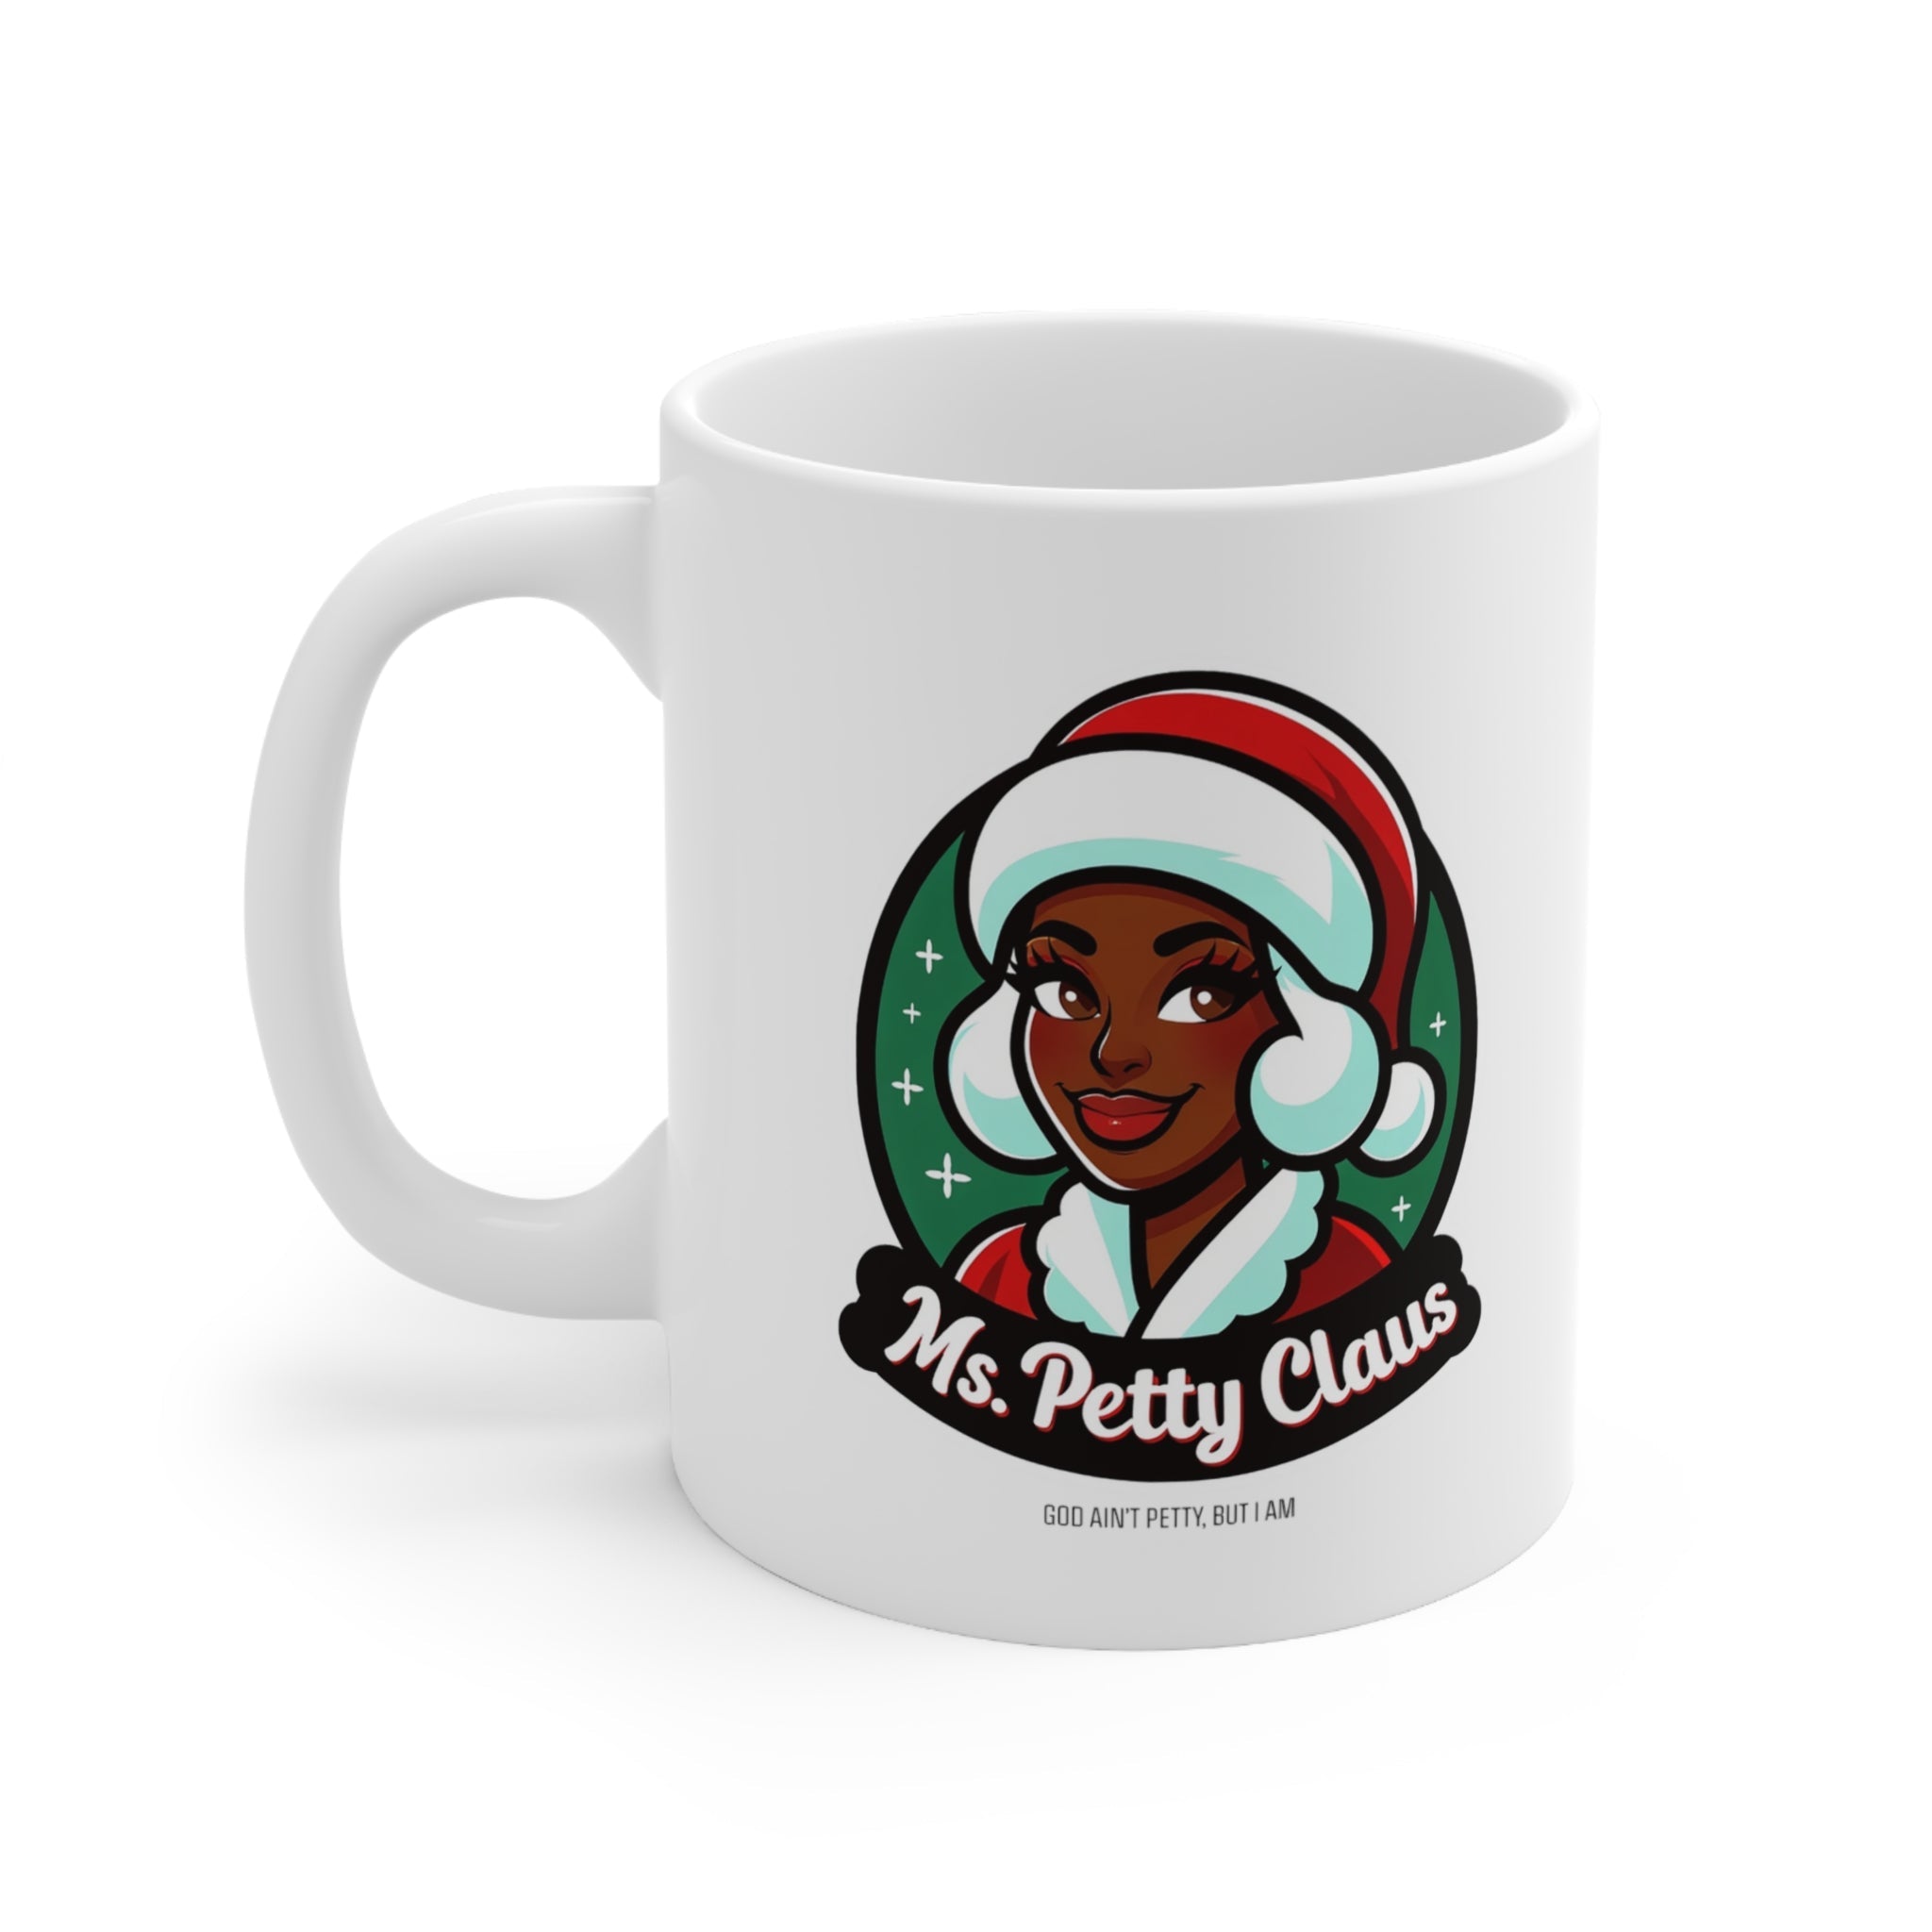 Ms. Petty Claus Image Ceramic Mug 11oz-Mug-The Original God Ain't Petty But I Am